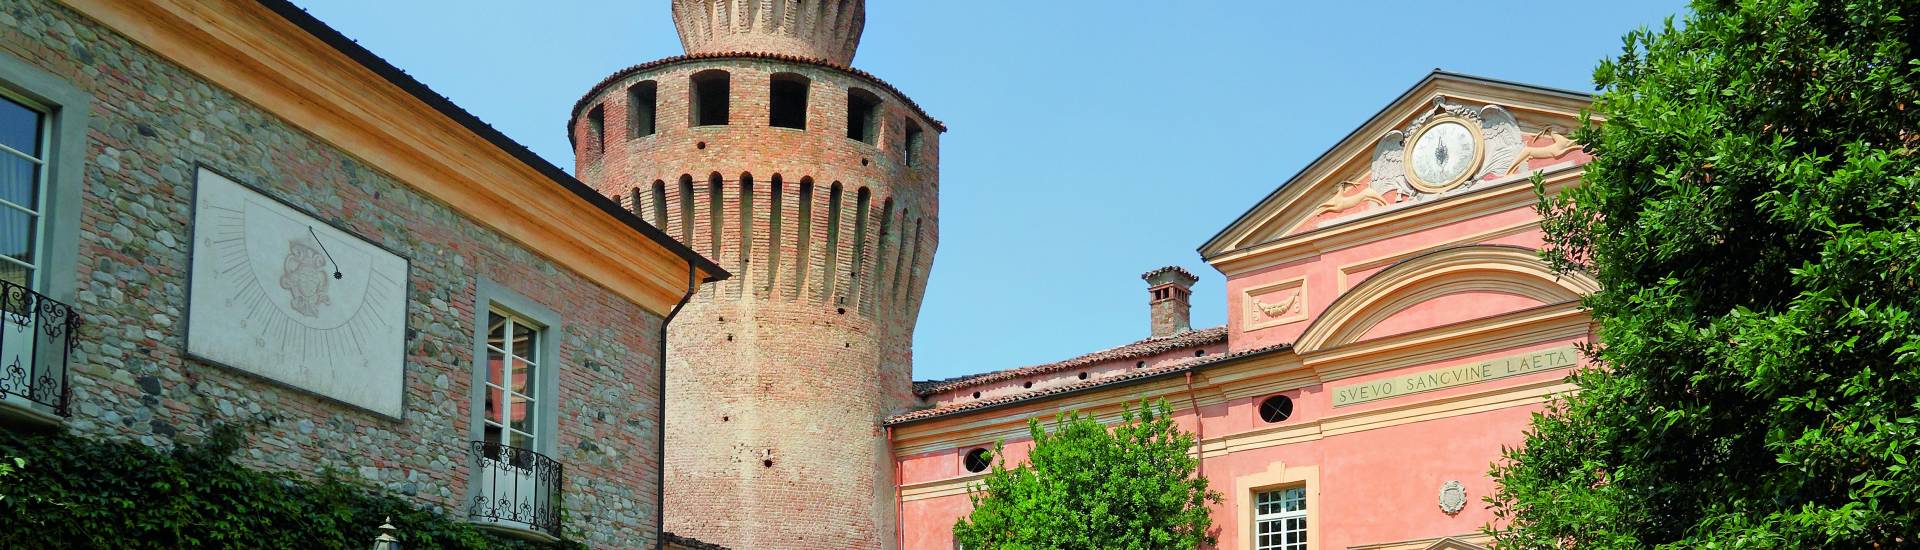 Castello di Rivalta -  photo credits: |Orazio Zanardi Landi| - Archivio fotografico del castello